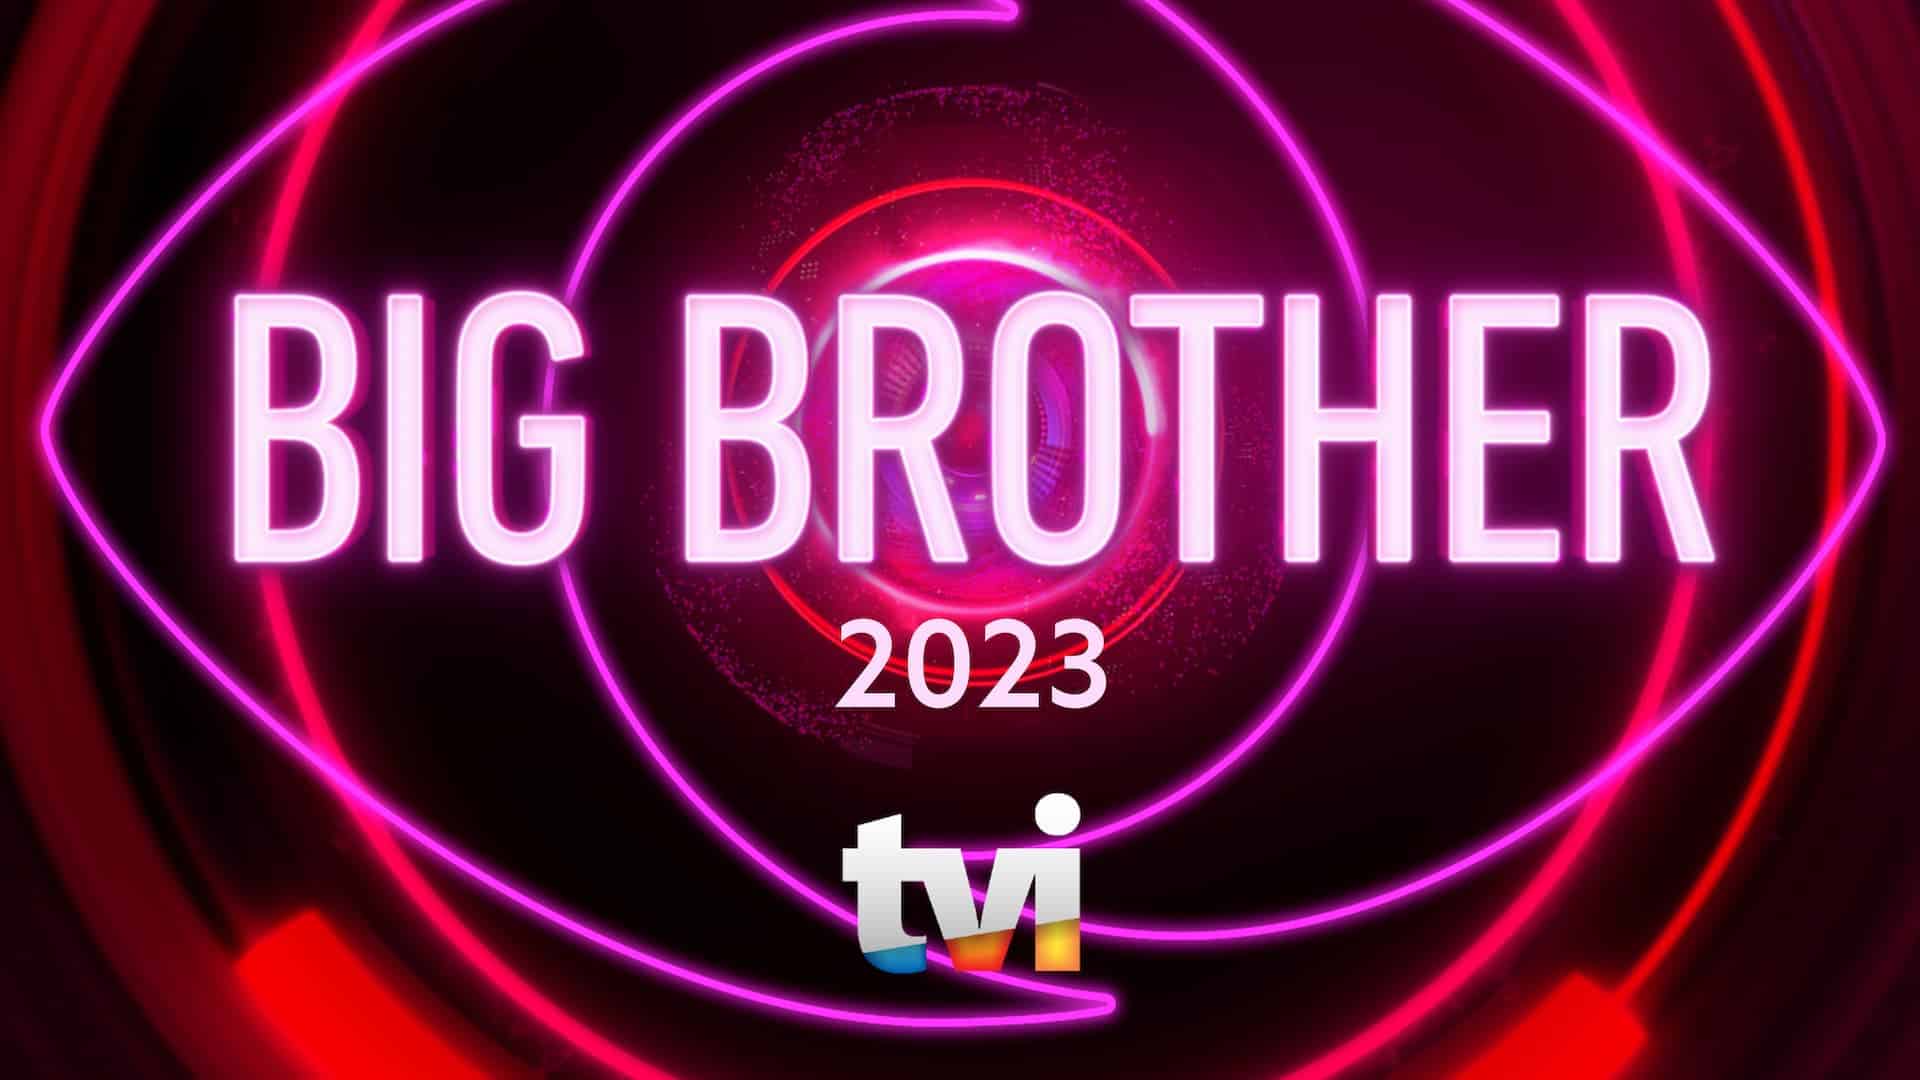 Big-Brother-2023-Tvi-Logo